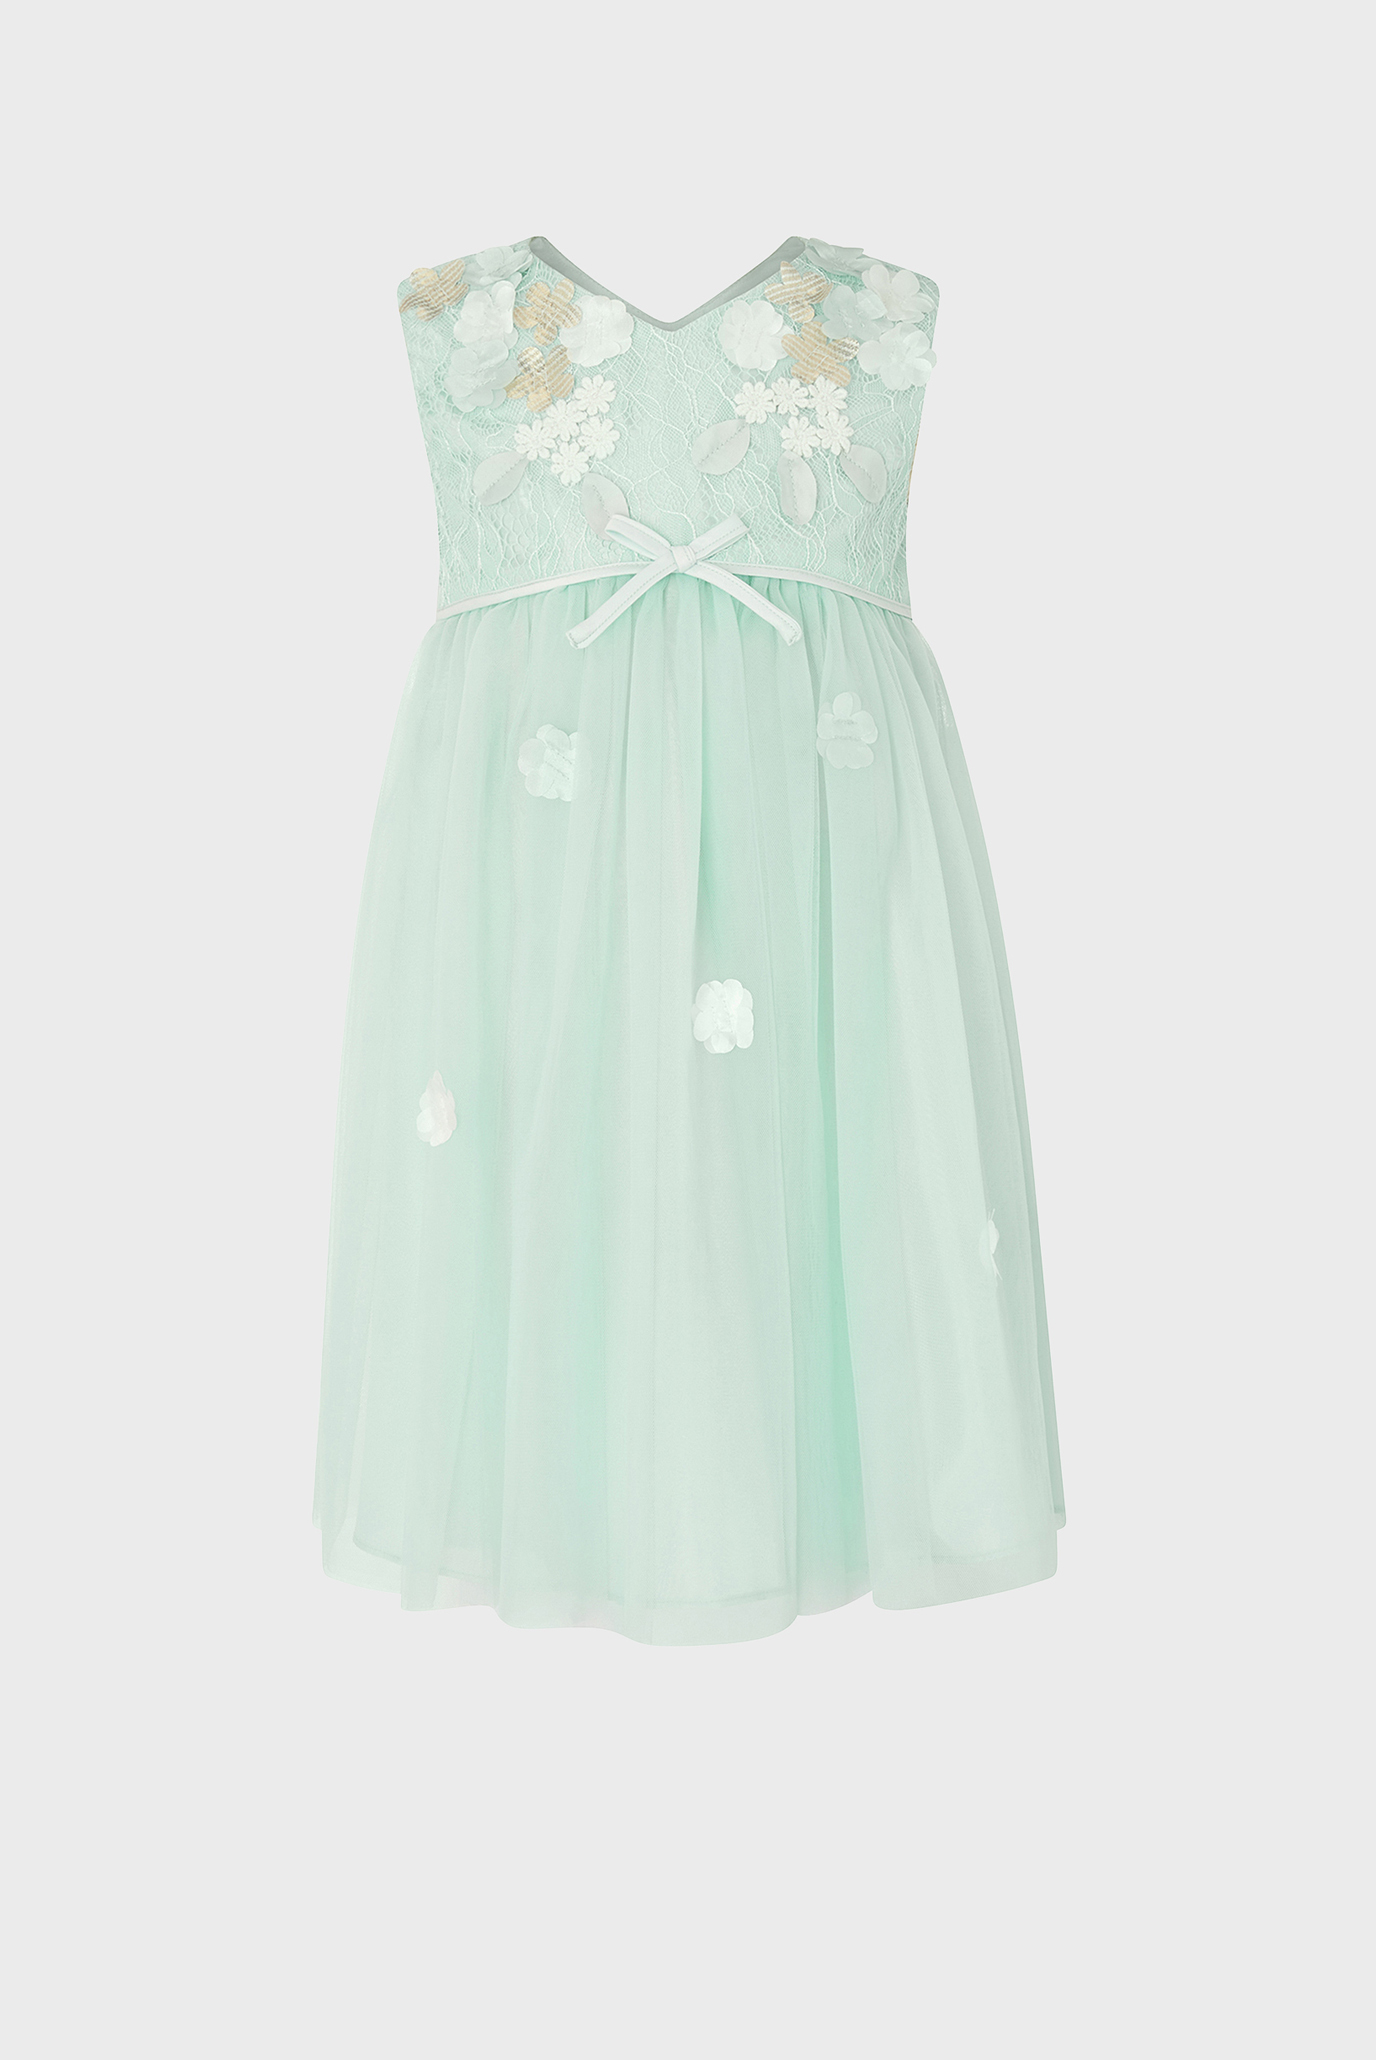 Дитяча зелена сукня Baby Lilly Dress 1